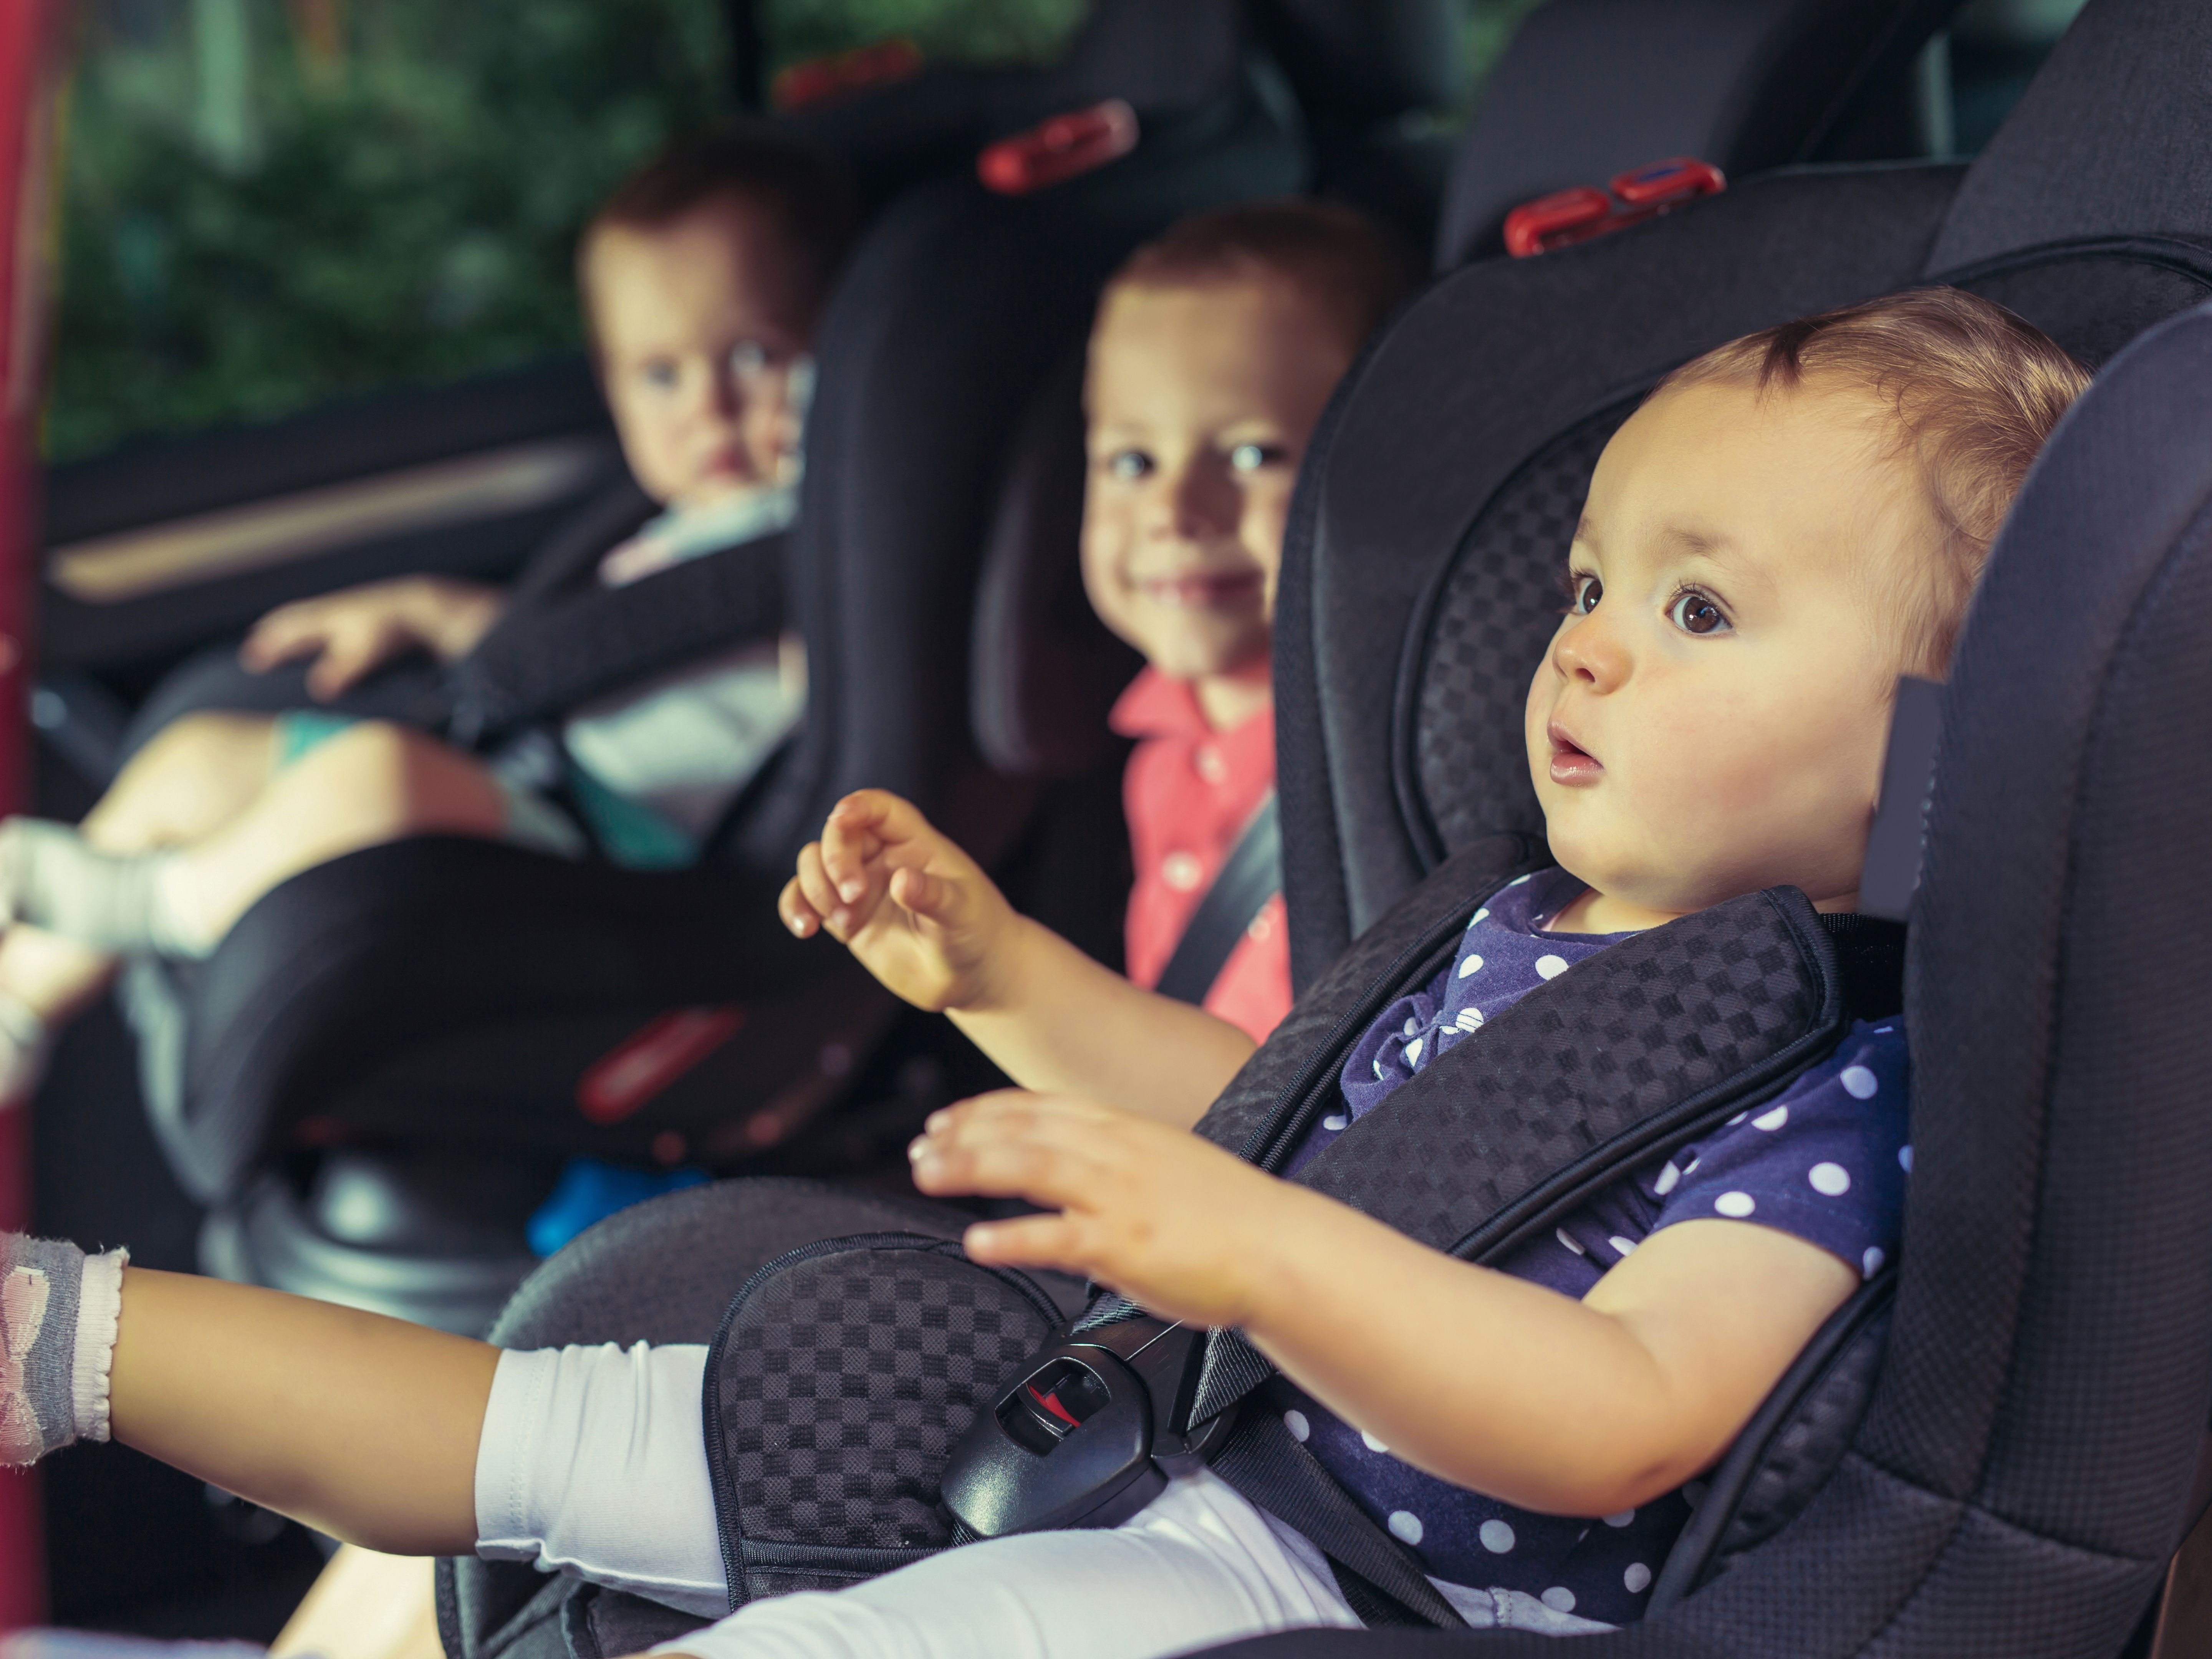 Quand changer de siège auto pour enfant ? - Mycarsit